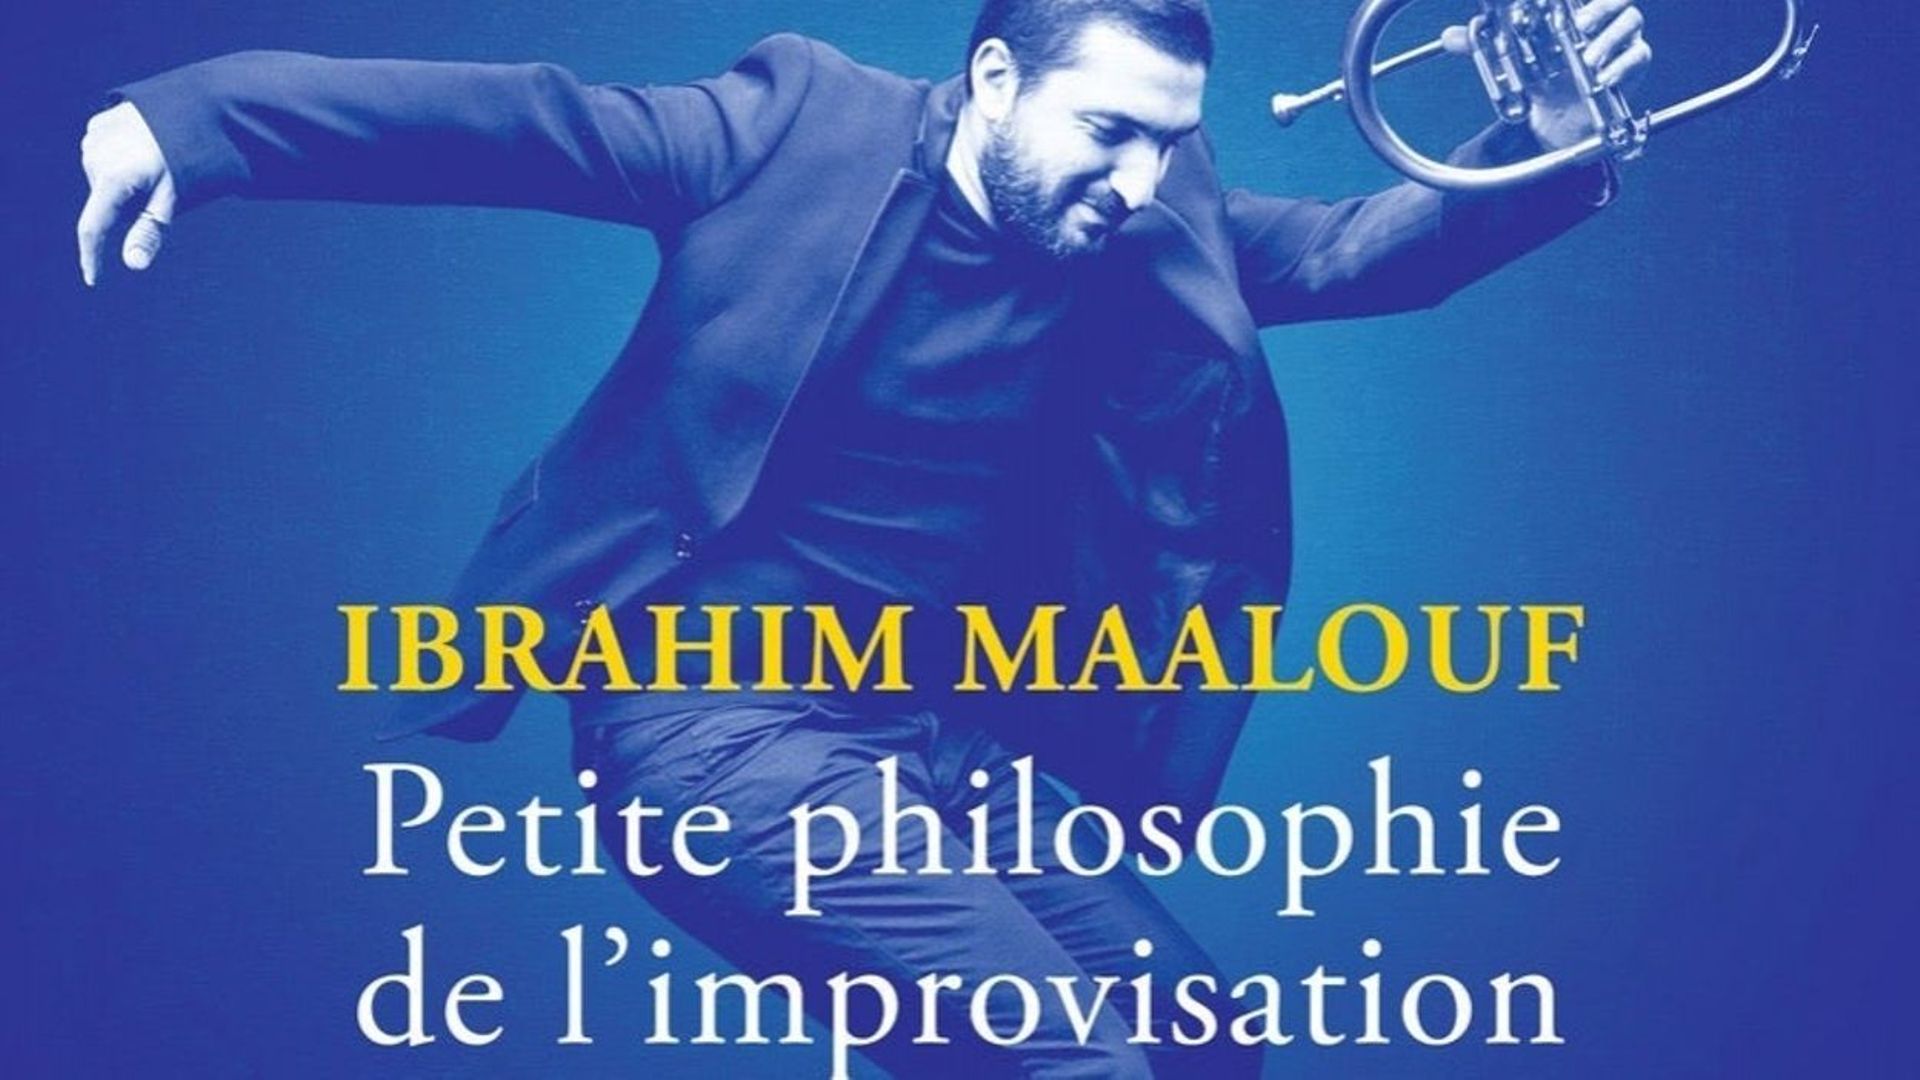 Ibrahim Maalouf : "On est là pour chercher, s’entraider les uns les autres pour réussir à trouver des solutions"